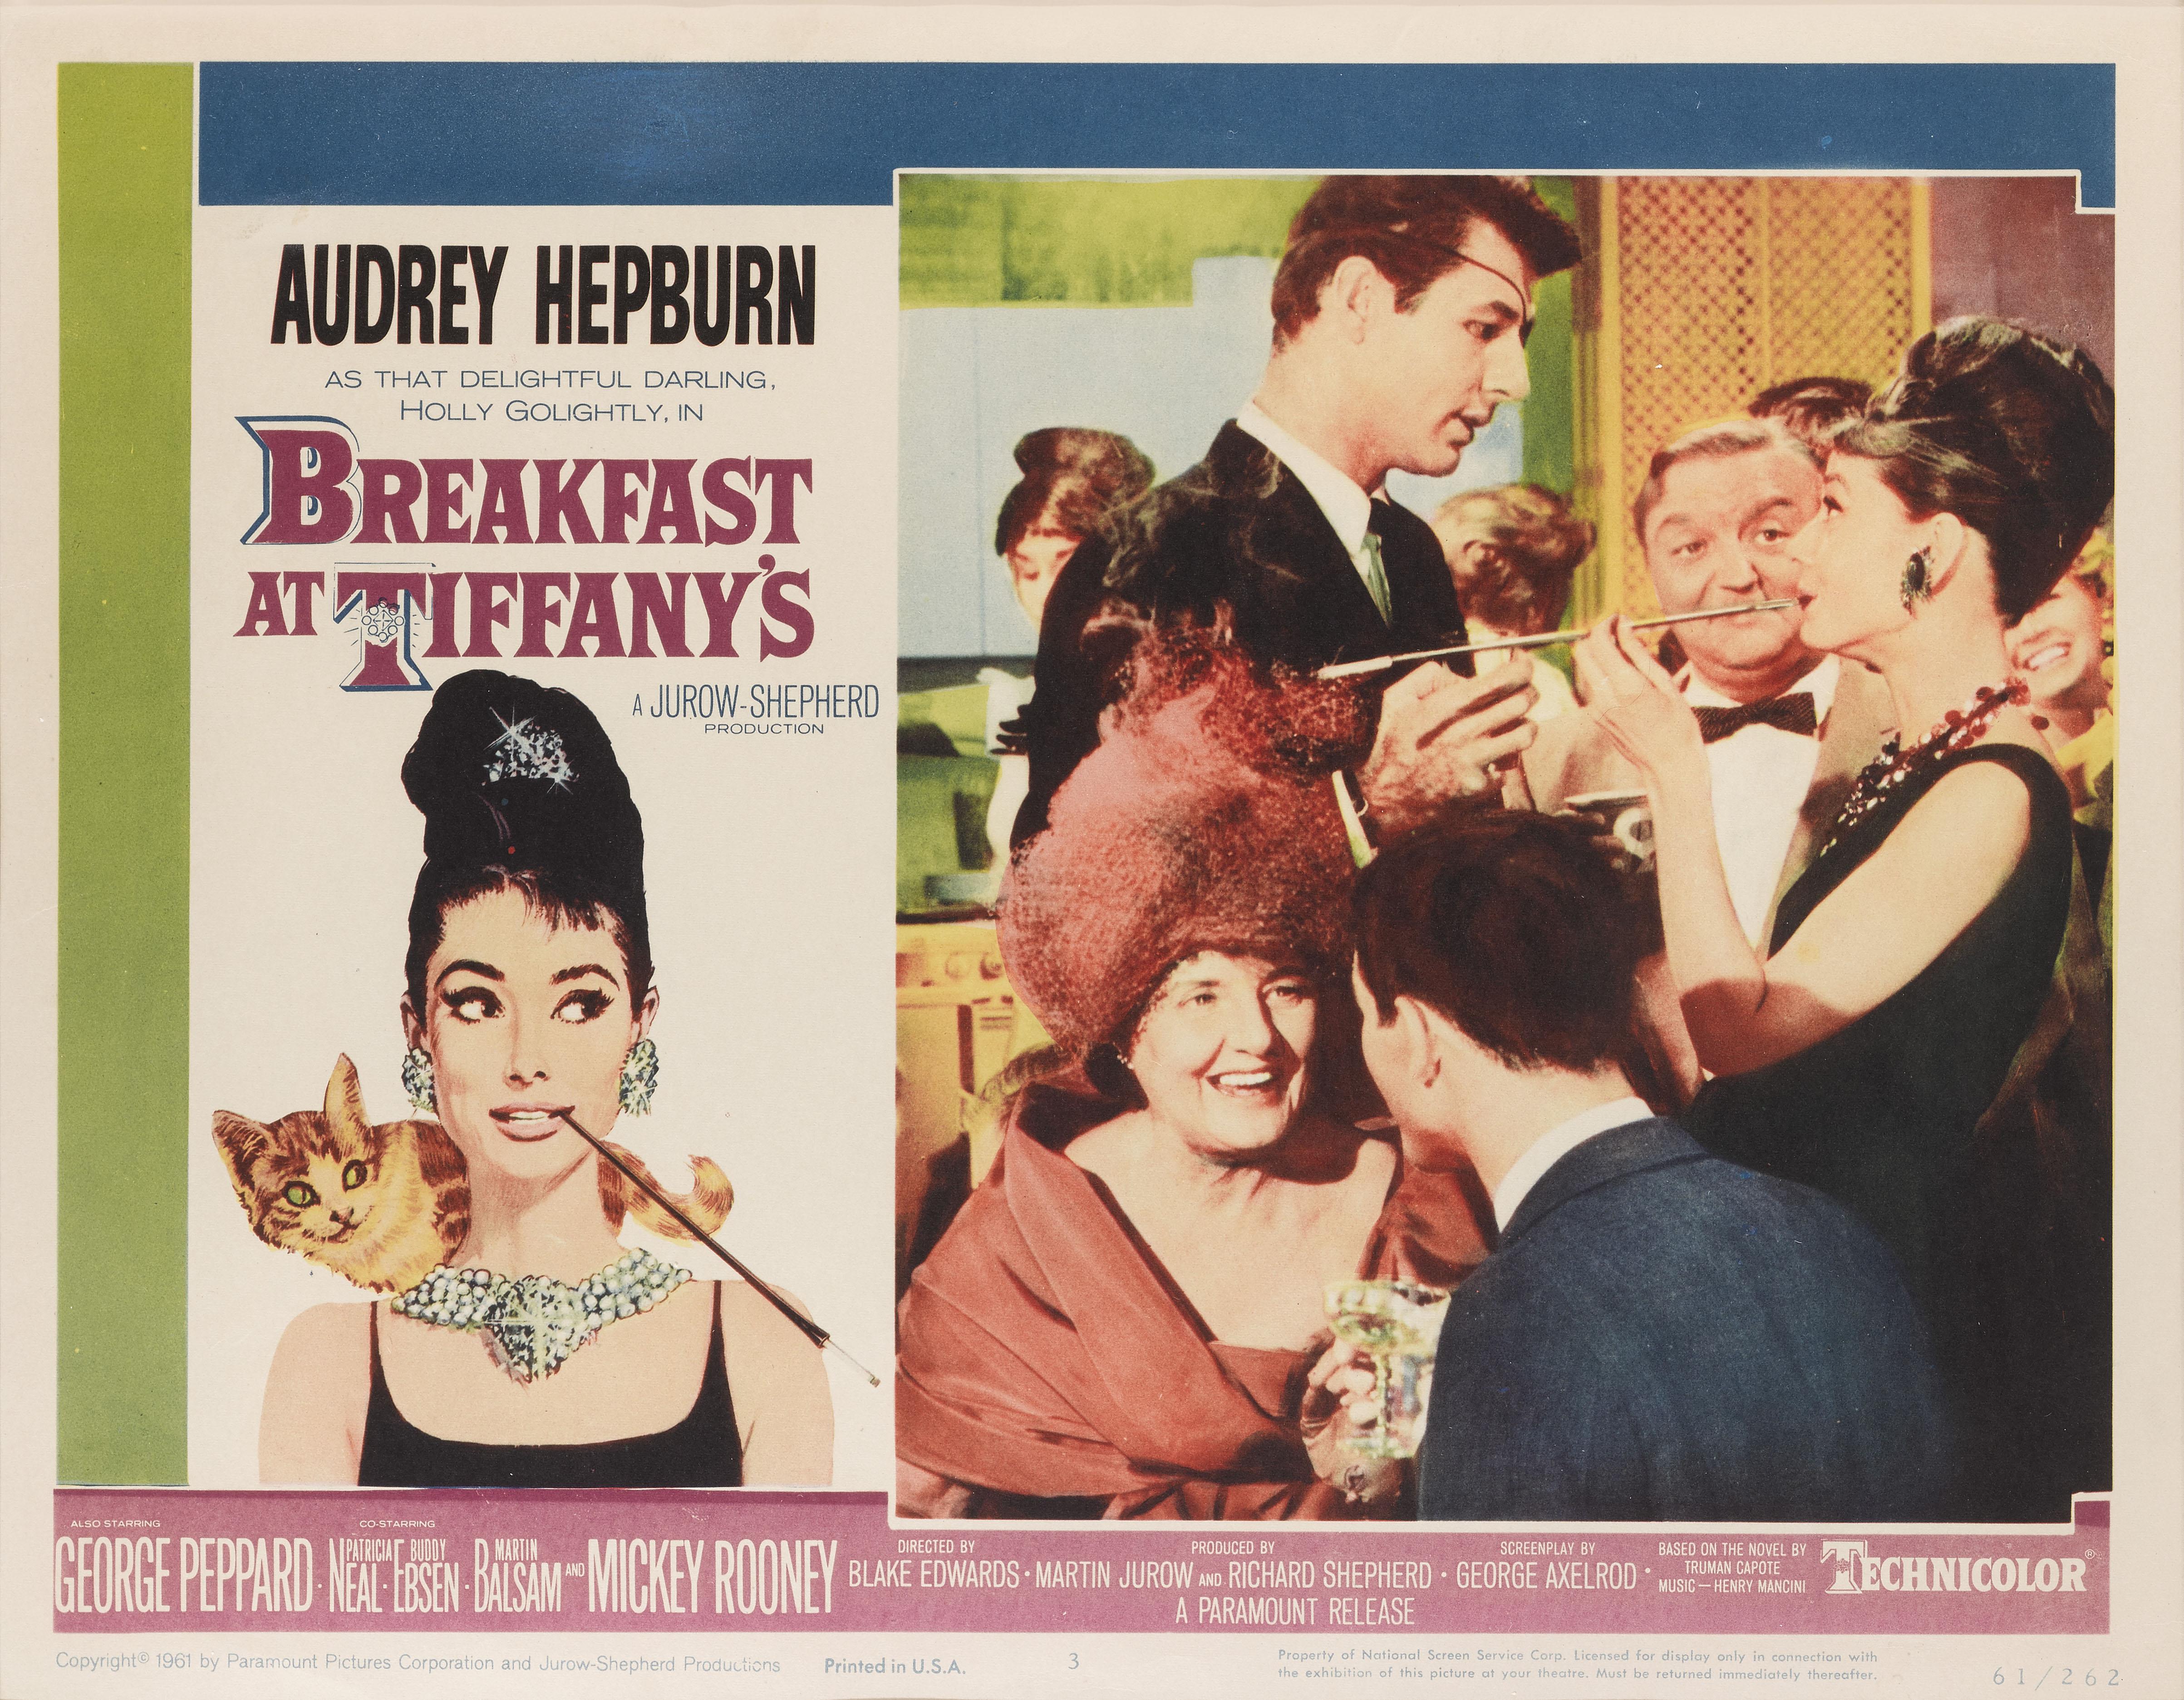 Original US-Lobby-Karte Nummer 3 für Audrey Hepburn und George Peppard's, Classic, 1961 Romanze. Die Regie bei diesem Film führte Blake Edwards.
Das Werk ist mit UV-Plexiglas in einem Tulpenholzrahmen mit säurefreien Passepartouts konservierend